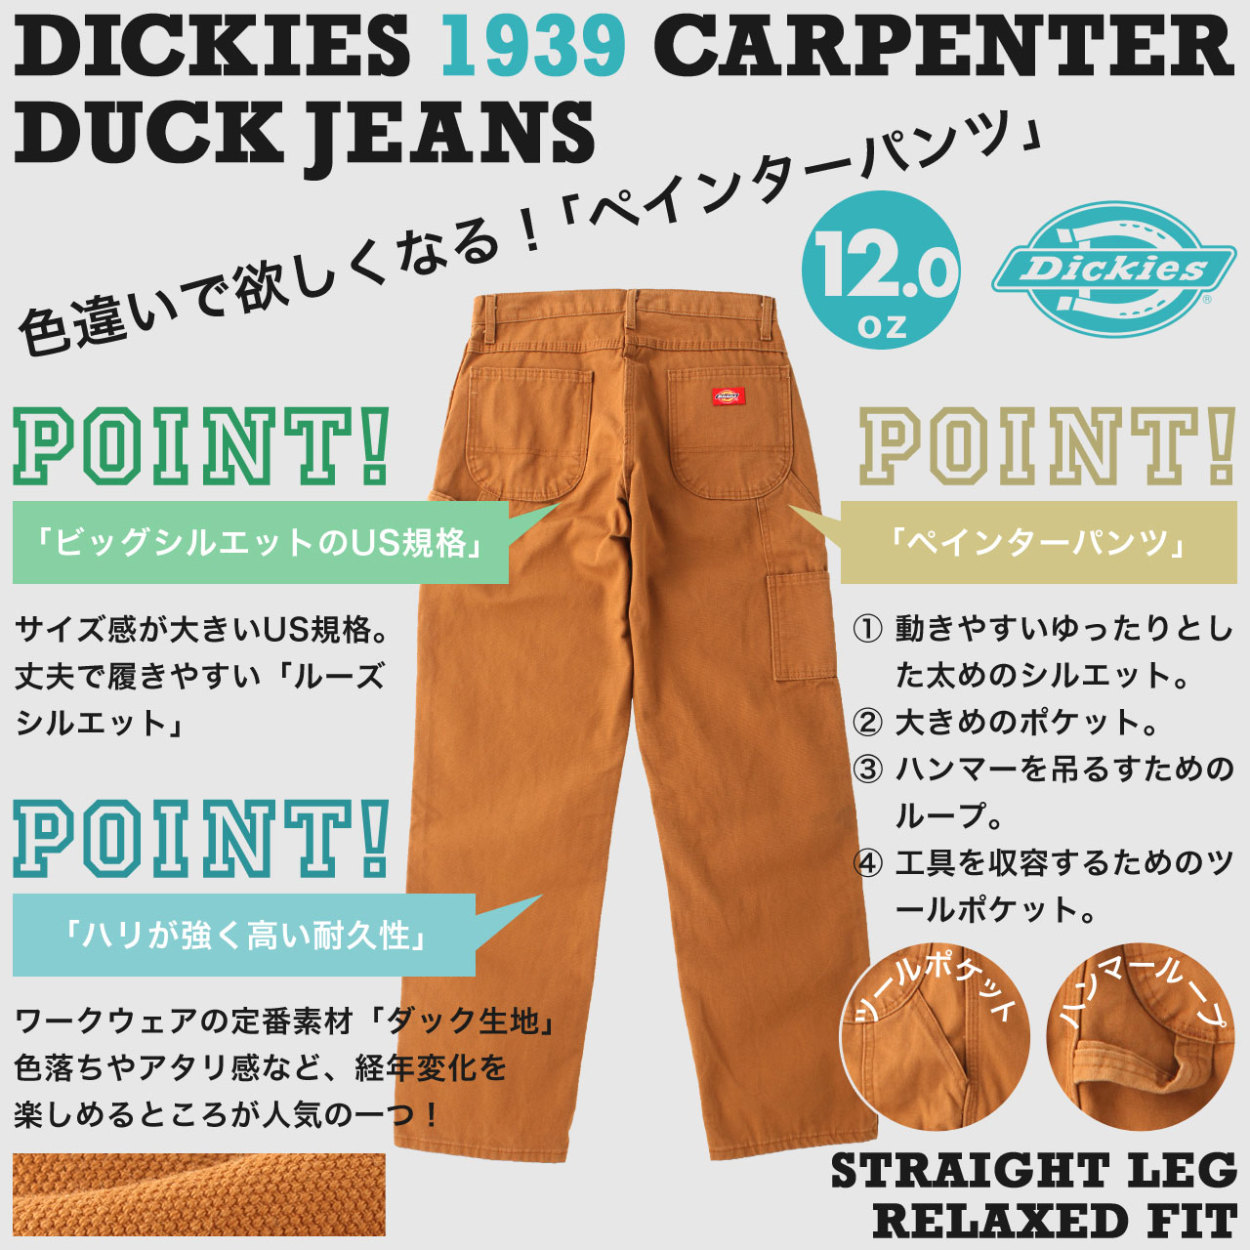 Dickies ディッキーズ 1939 ペインターパンツ メンズ ダック生地 リラックスフィット ワークパンツ 大きいサイズ 作業着 作業服 作業ズボン (USAモデル)